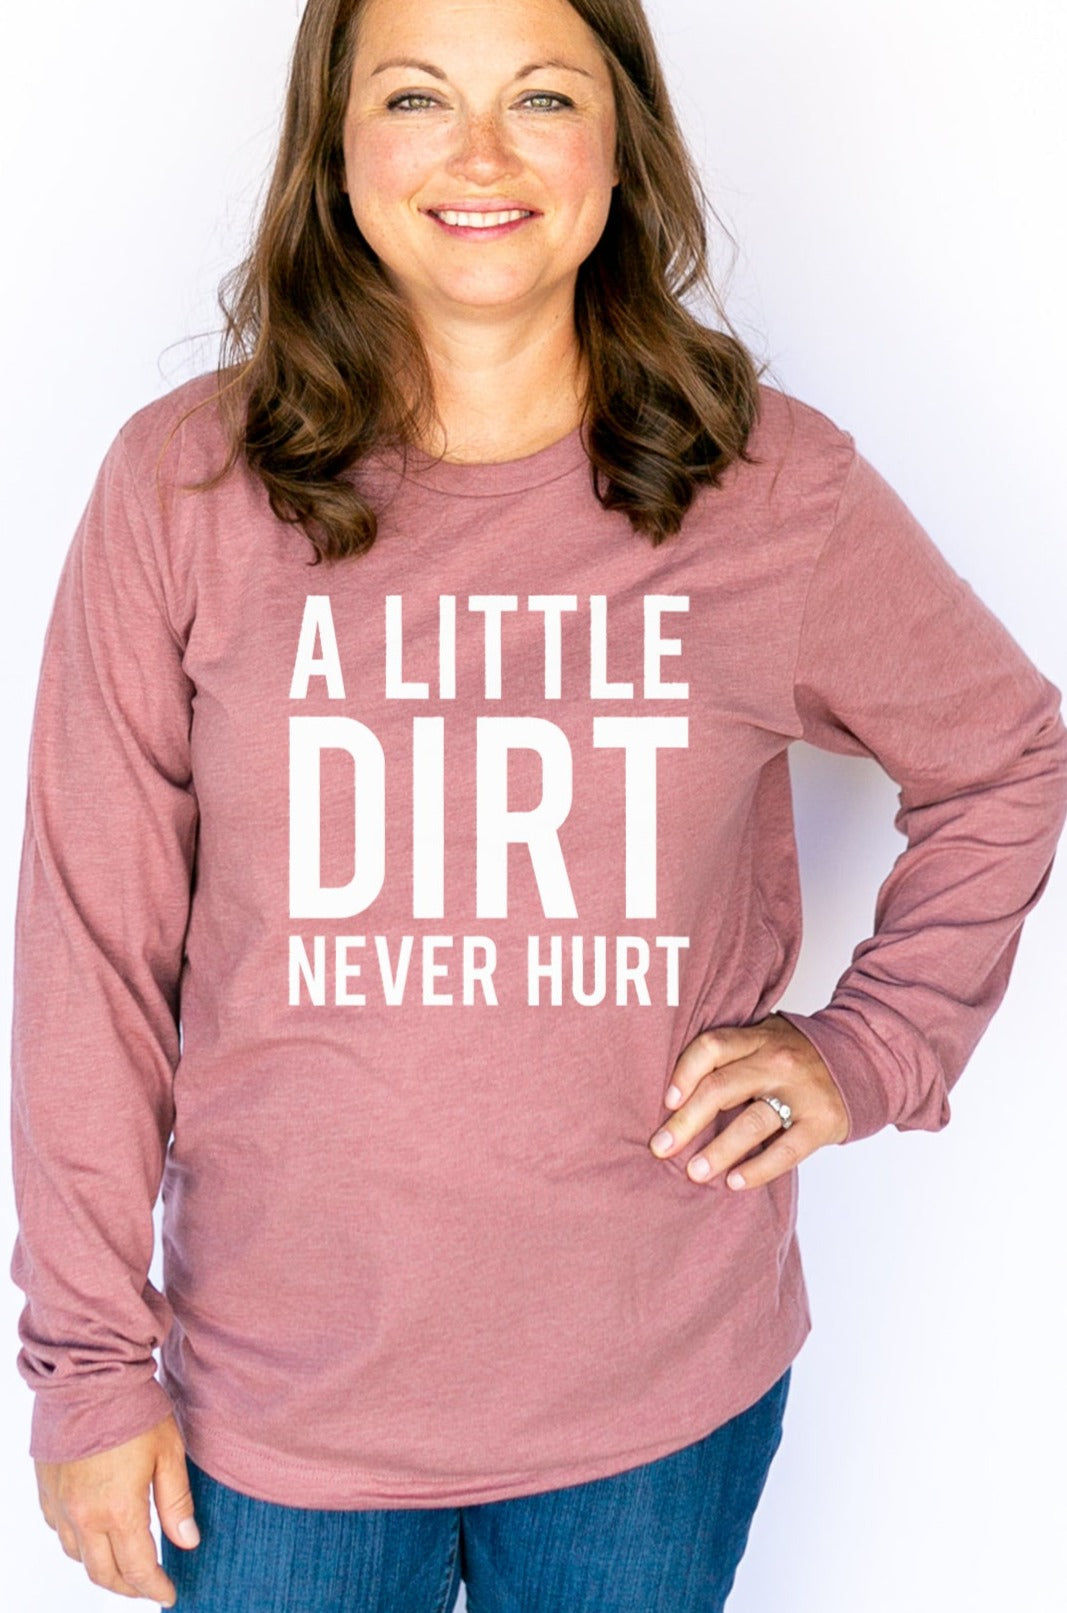 Dirt Never Hurt Long Sleeve Shirt